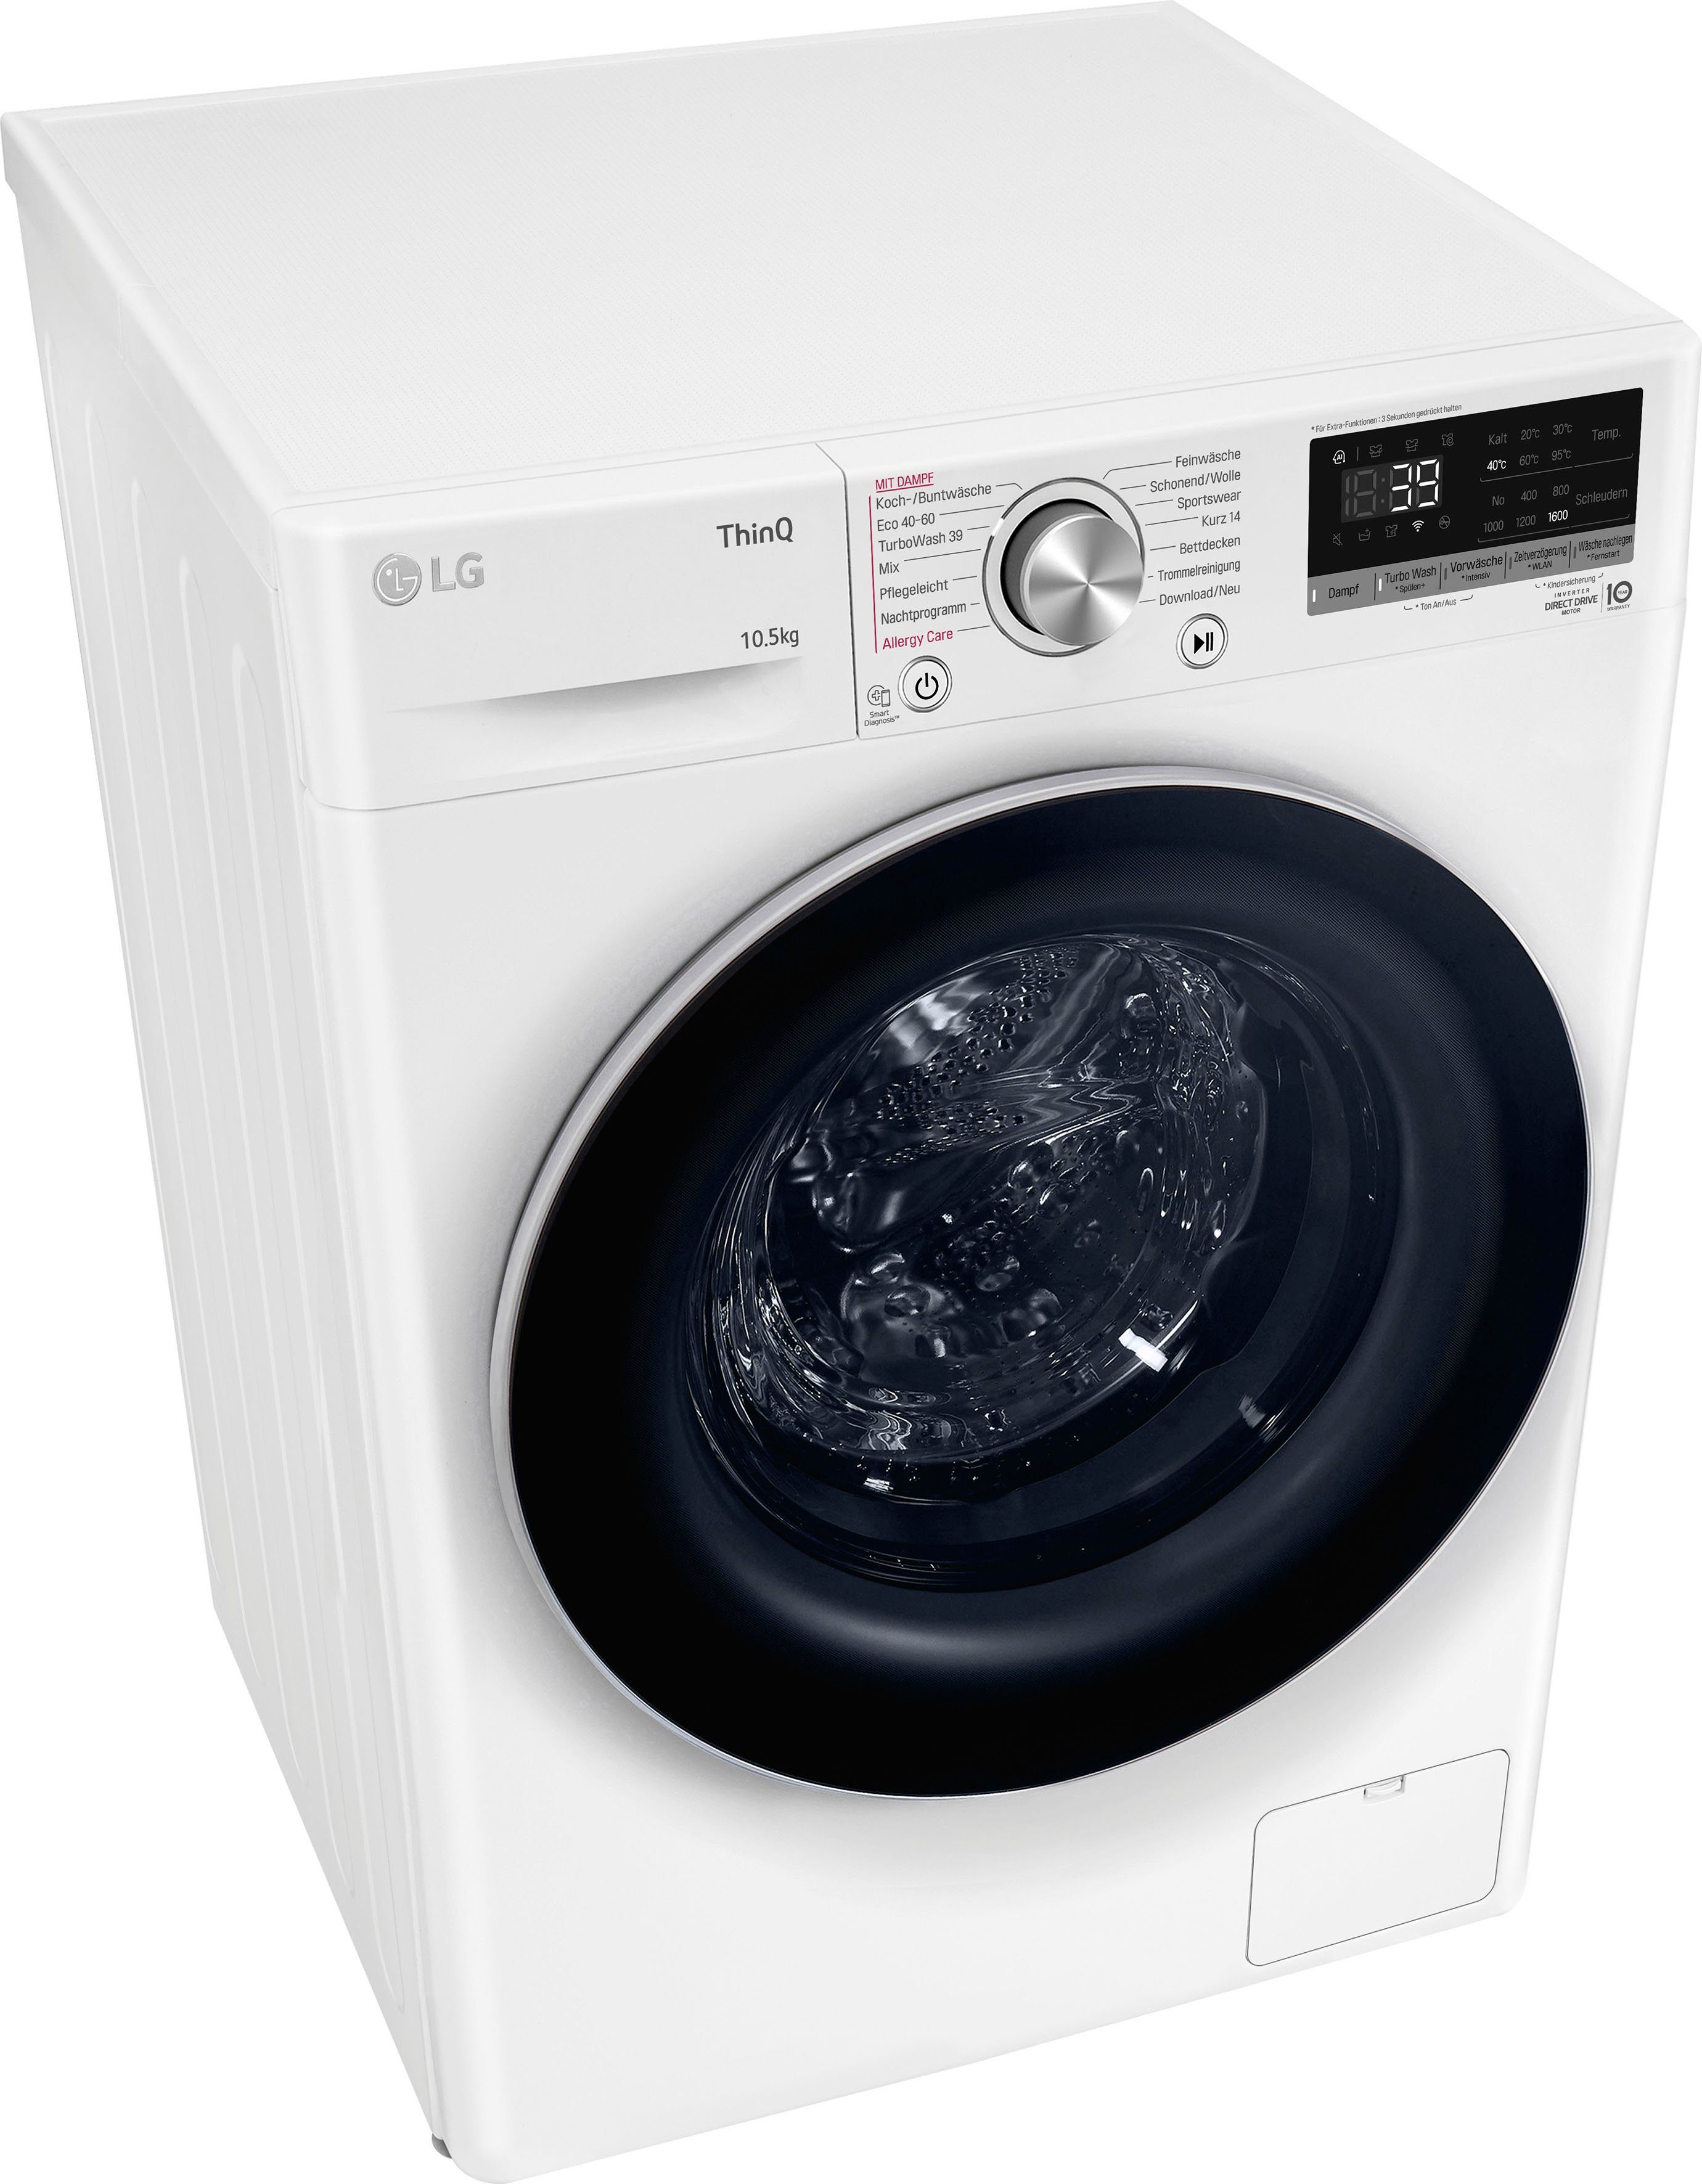 TurboWash® nur in Waschen 1600 kg, Waschmaschine Minuten - U/min, F6WV710P1, 39 LG 10,5